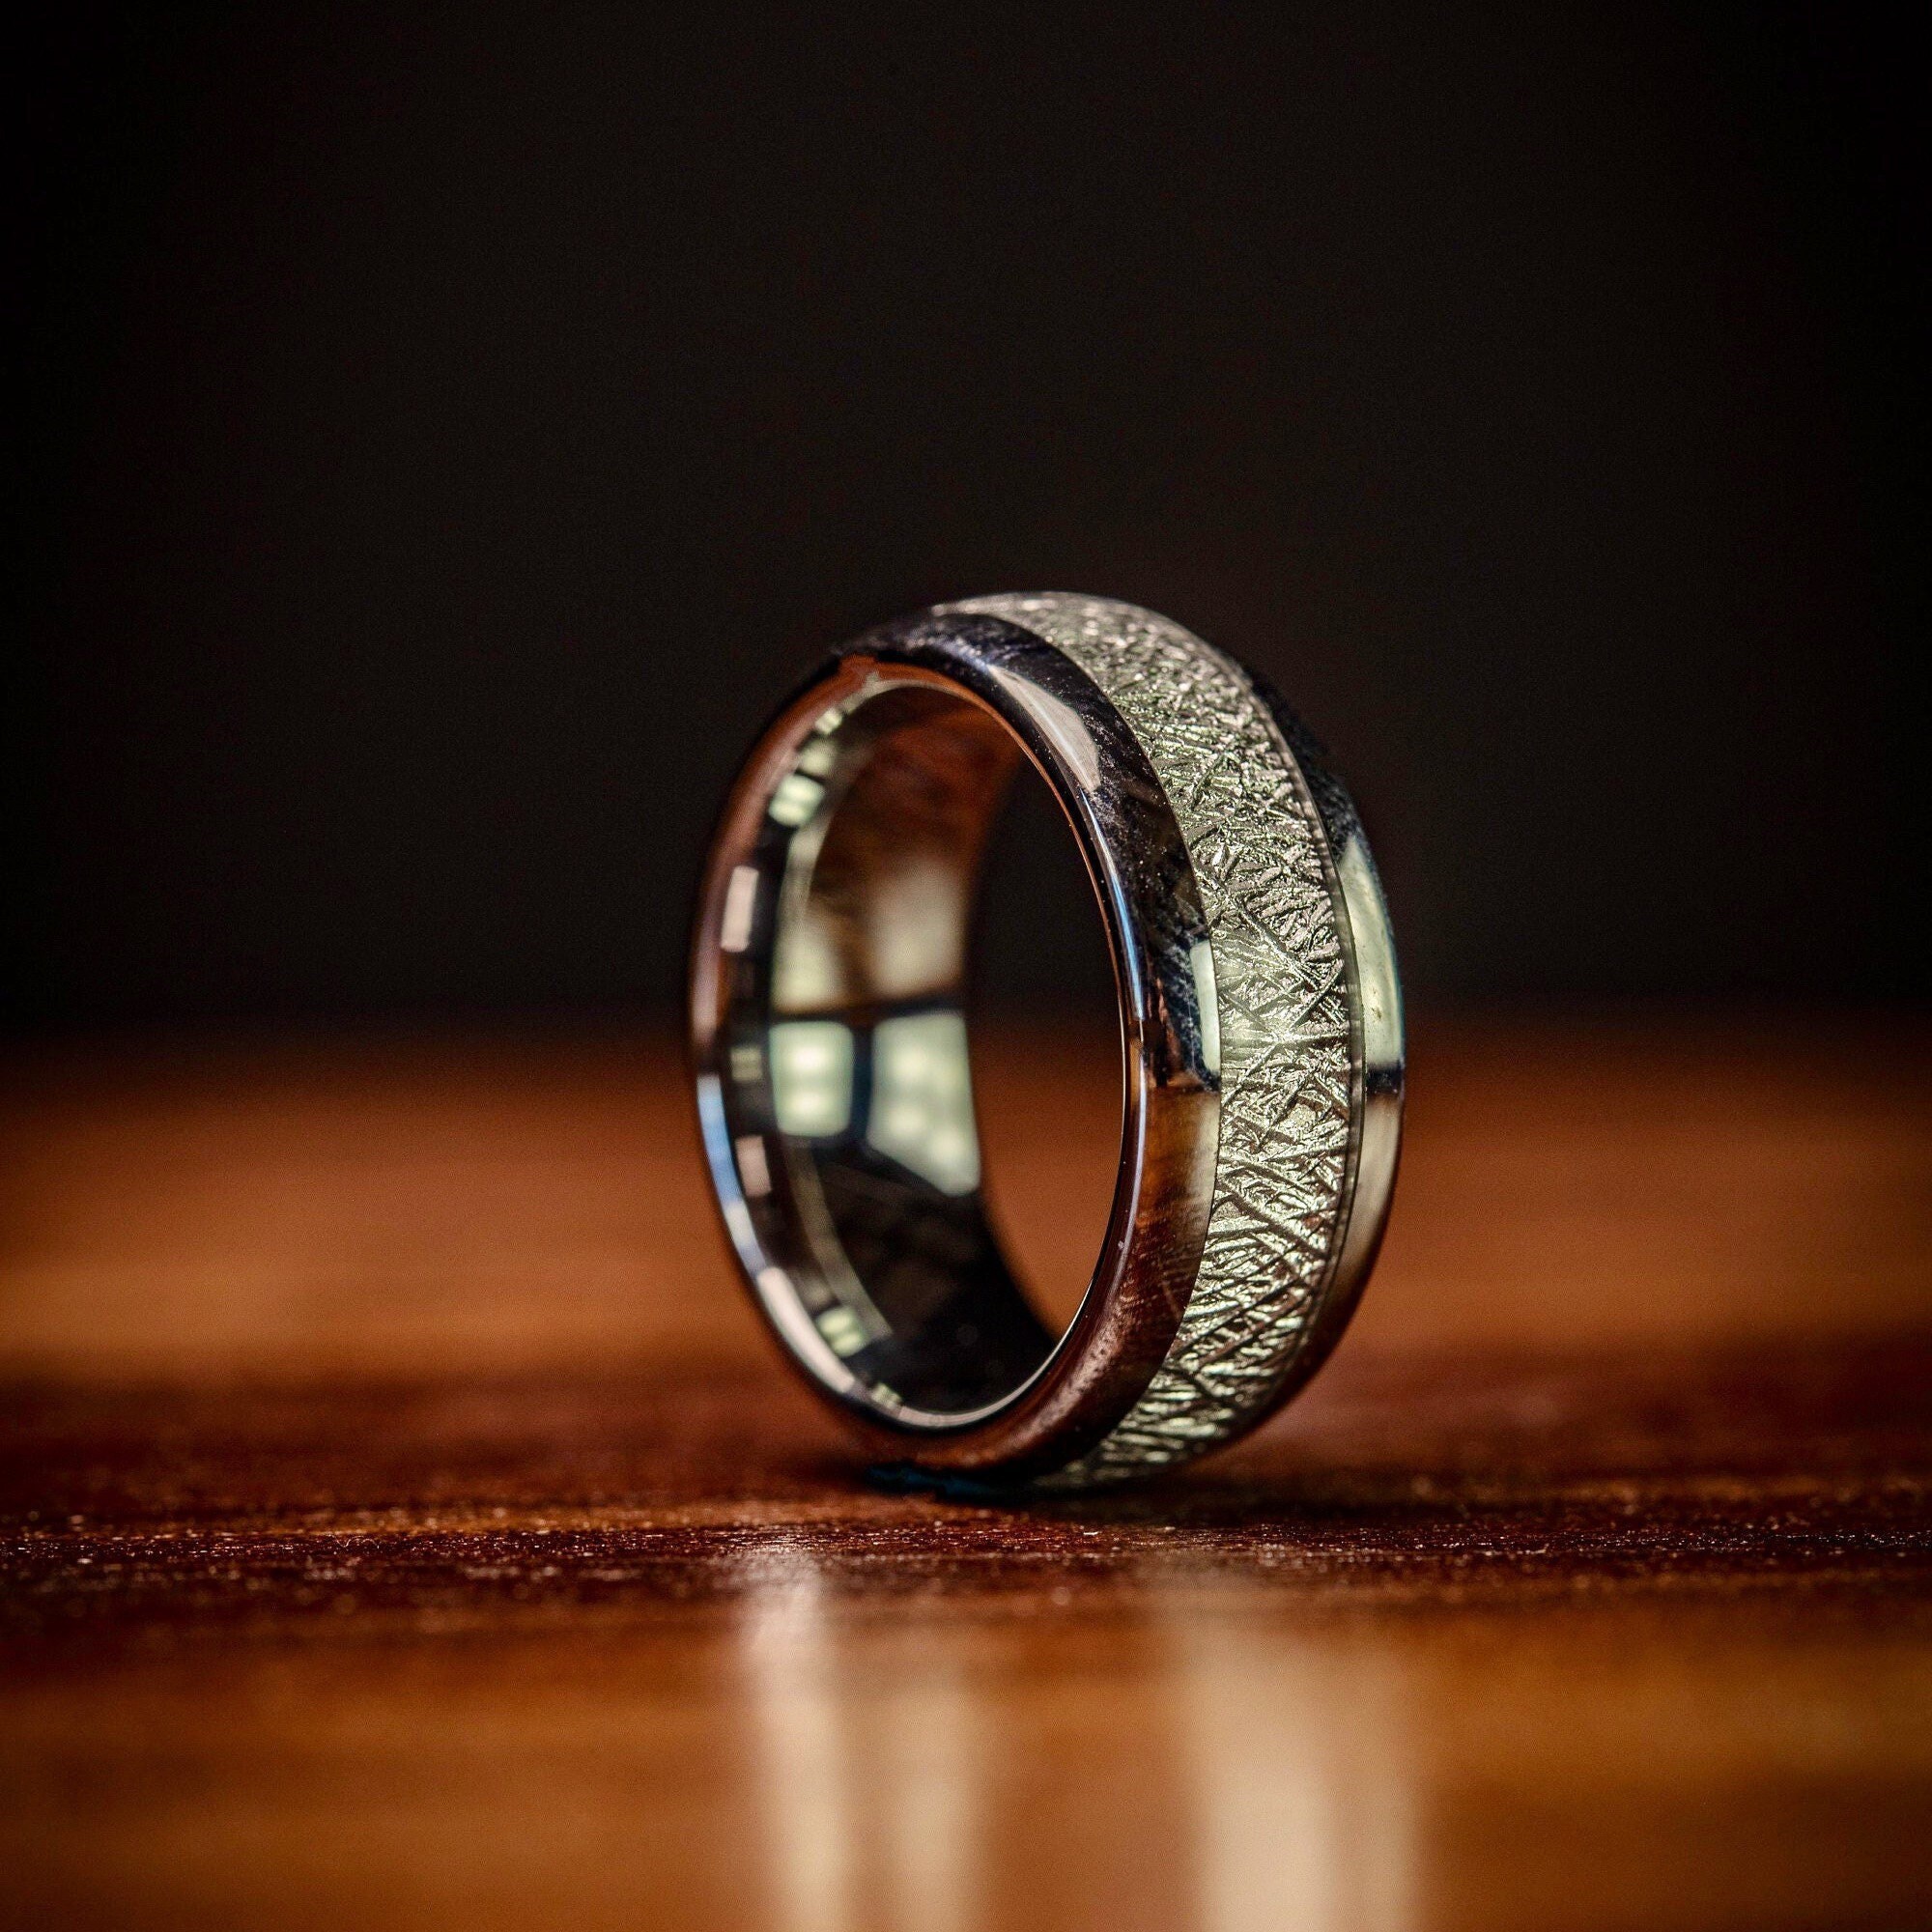 METEORITE RING Silver Wedding Ring Men's Meteorite Ring - Etsy